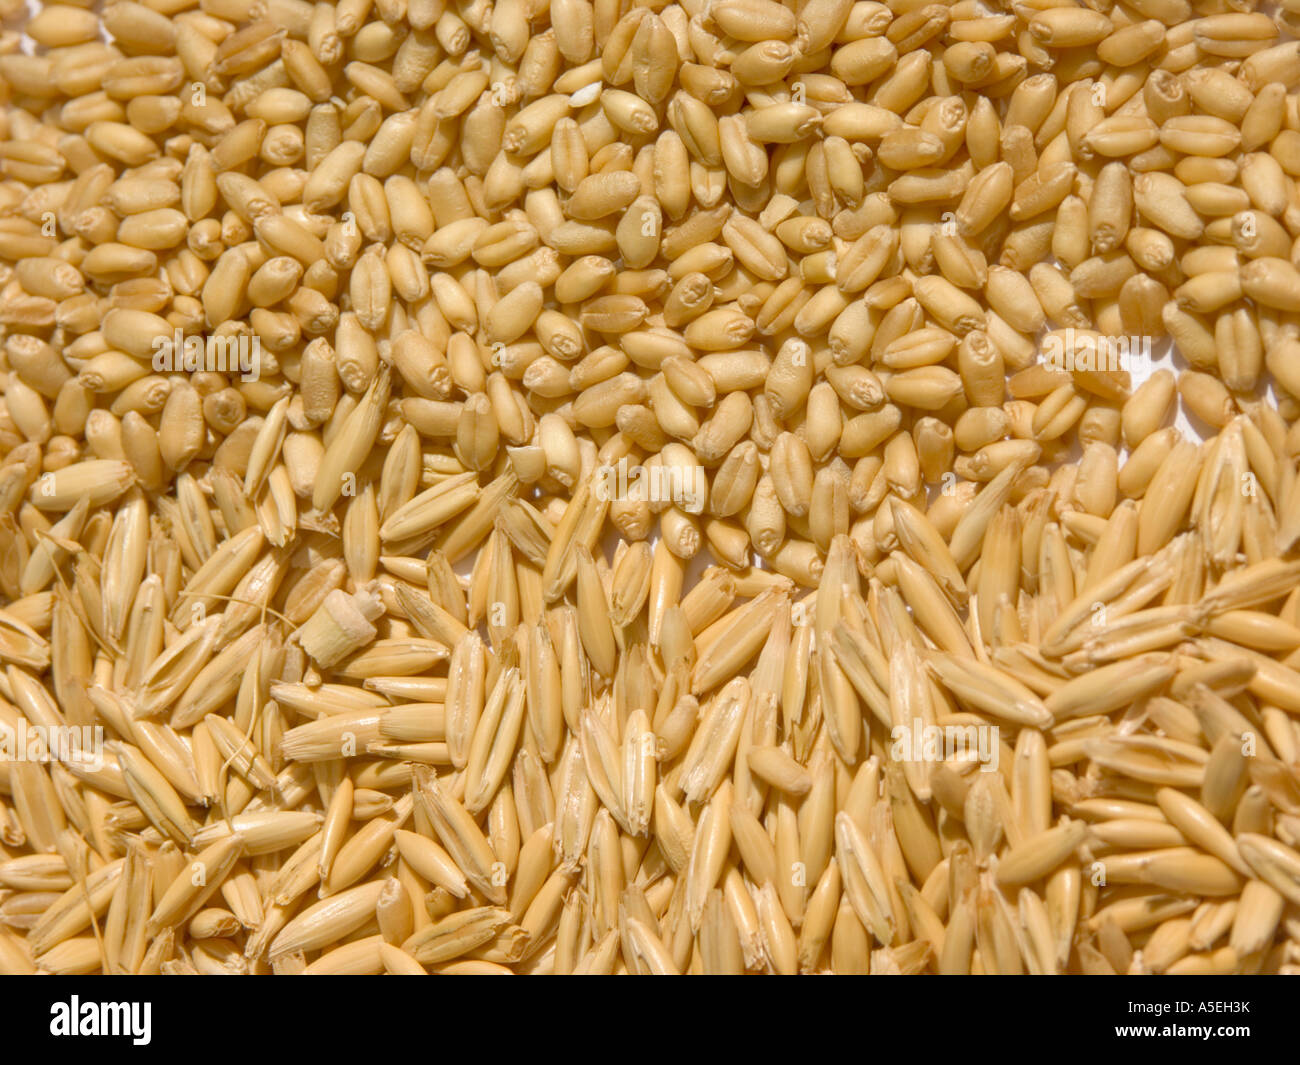 Detailansicht der Getreidekörner von Hafer und Weizen Stockfoto